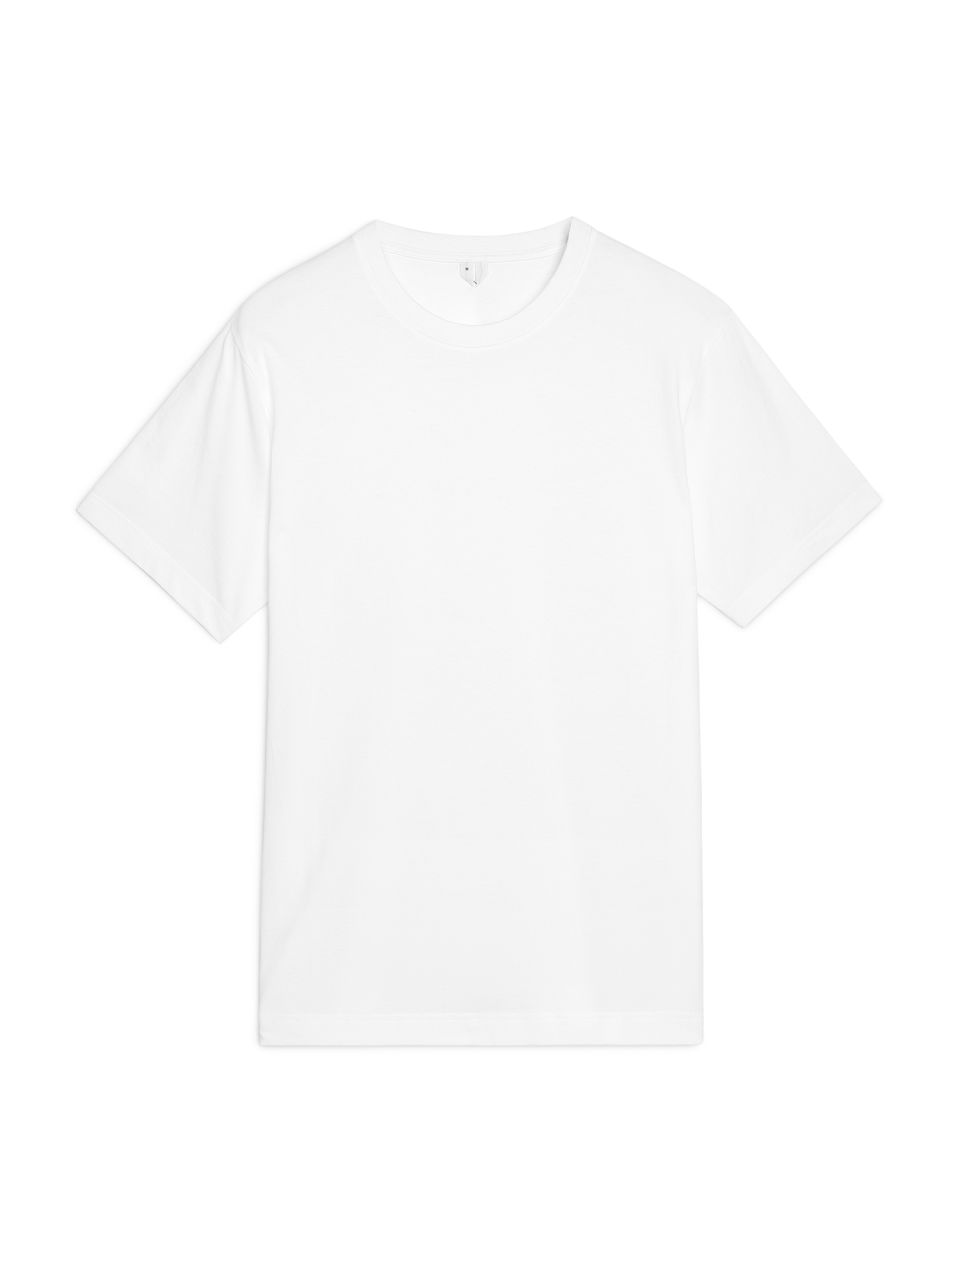 Arket Midweight T-Shirt